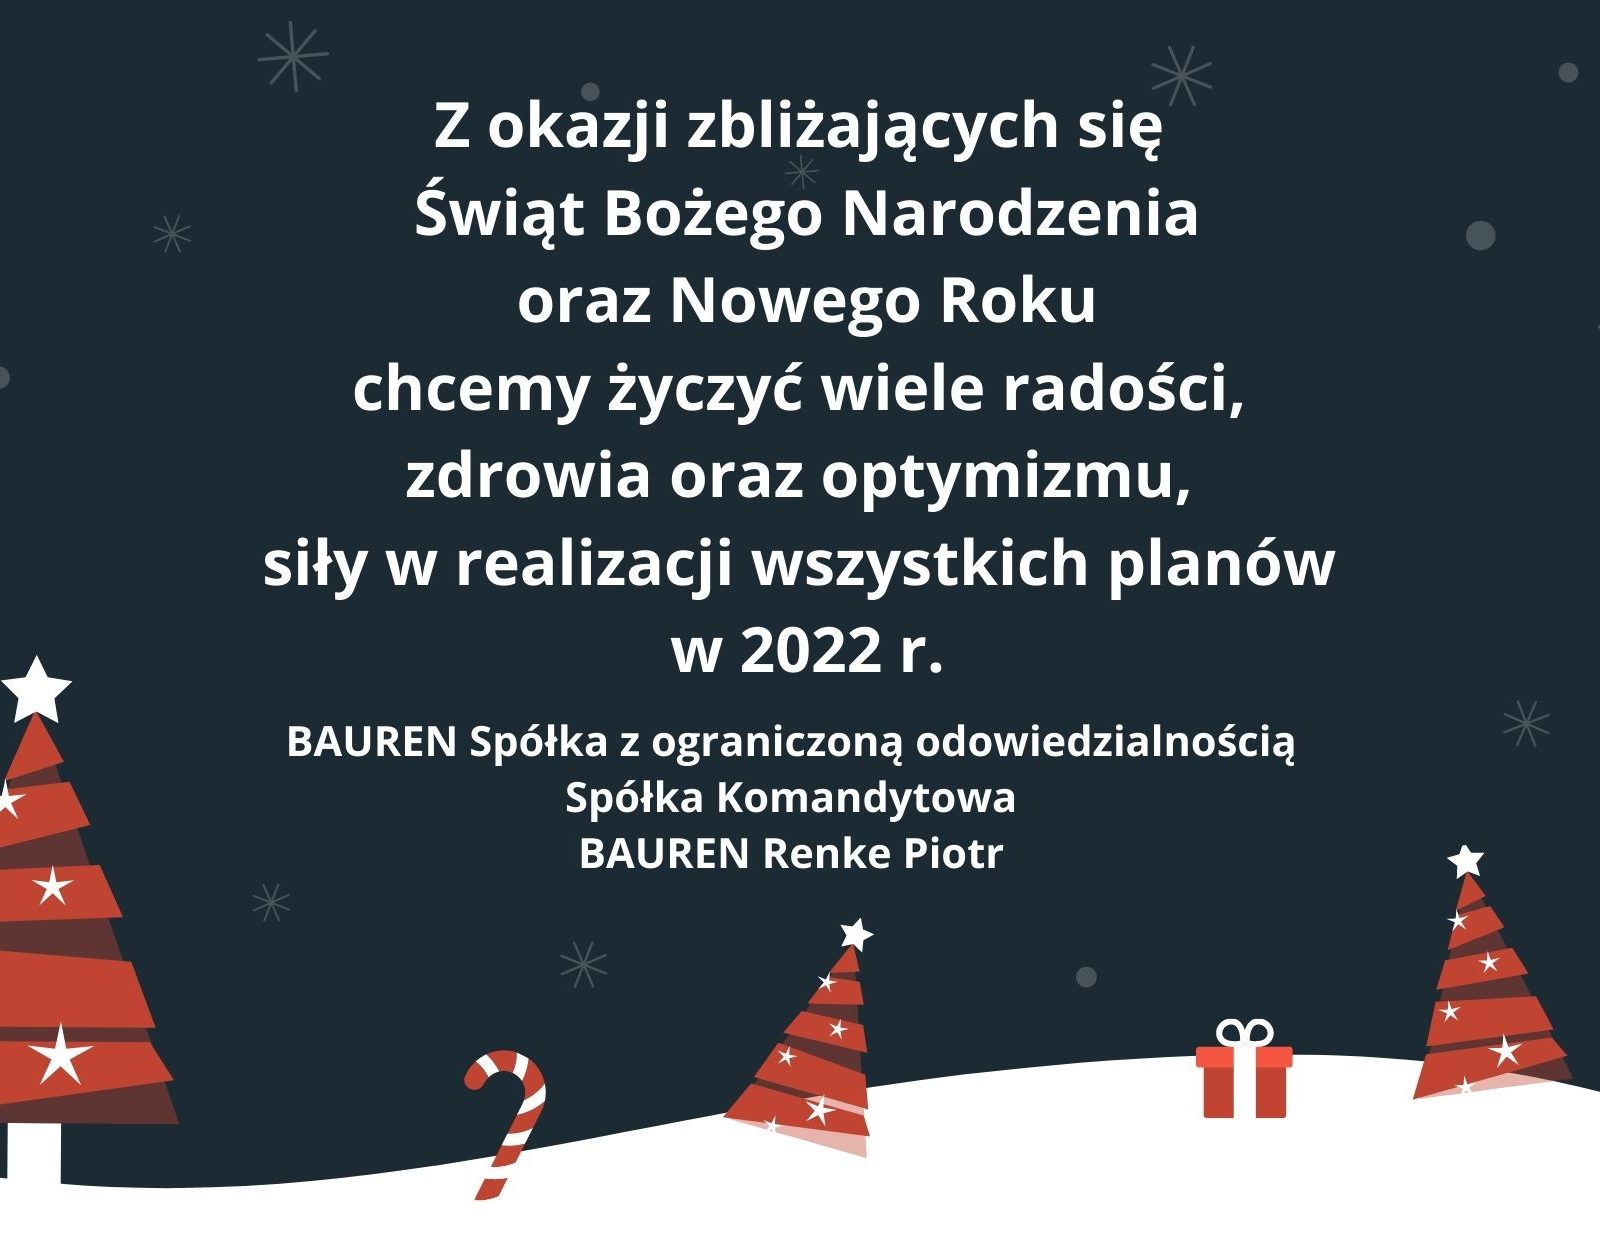 Zdjęcie przedstawia życzenia świąteczne firmy BUAREN